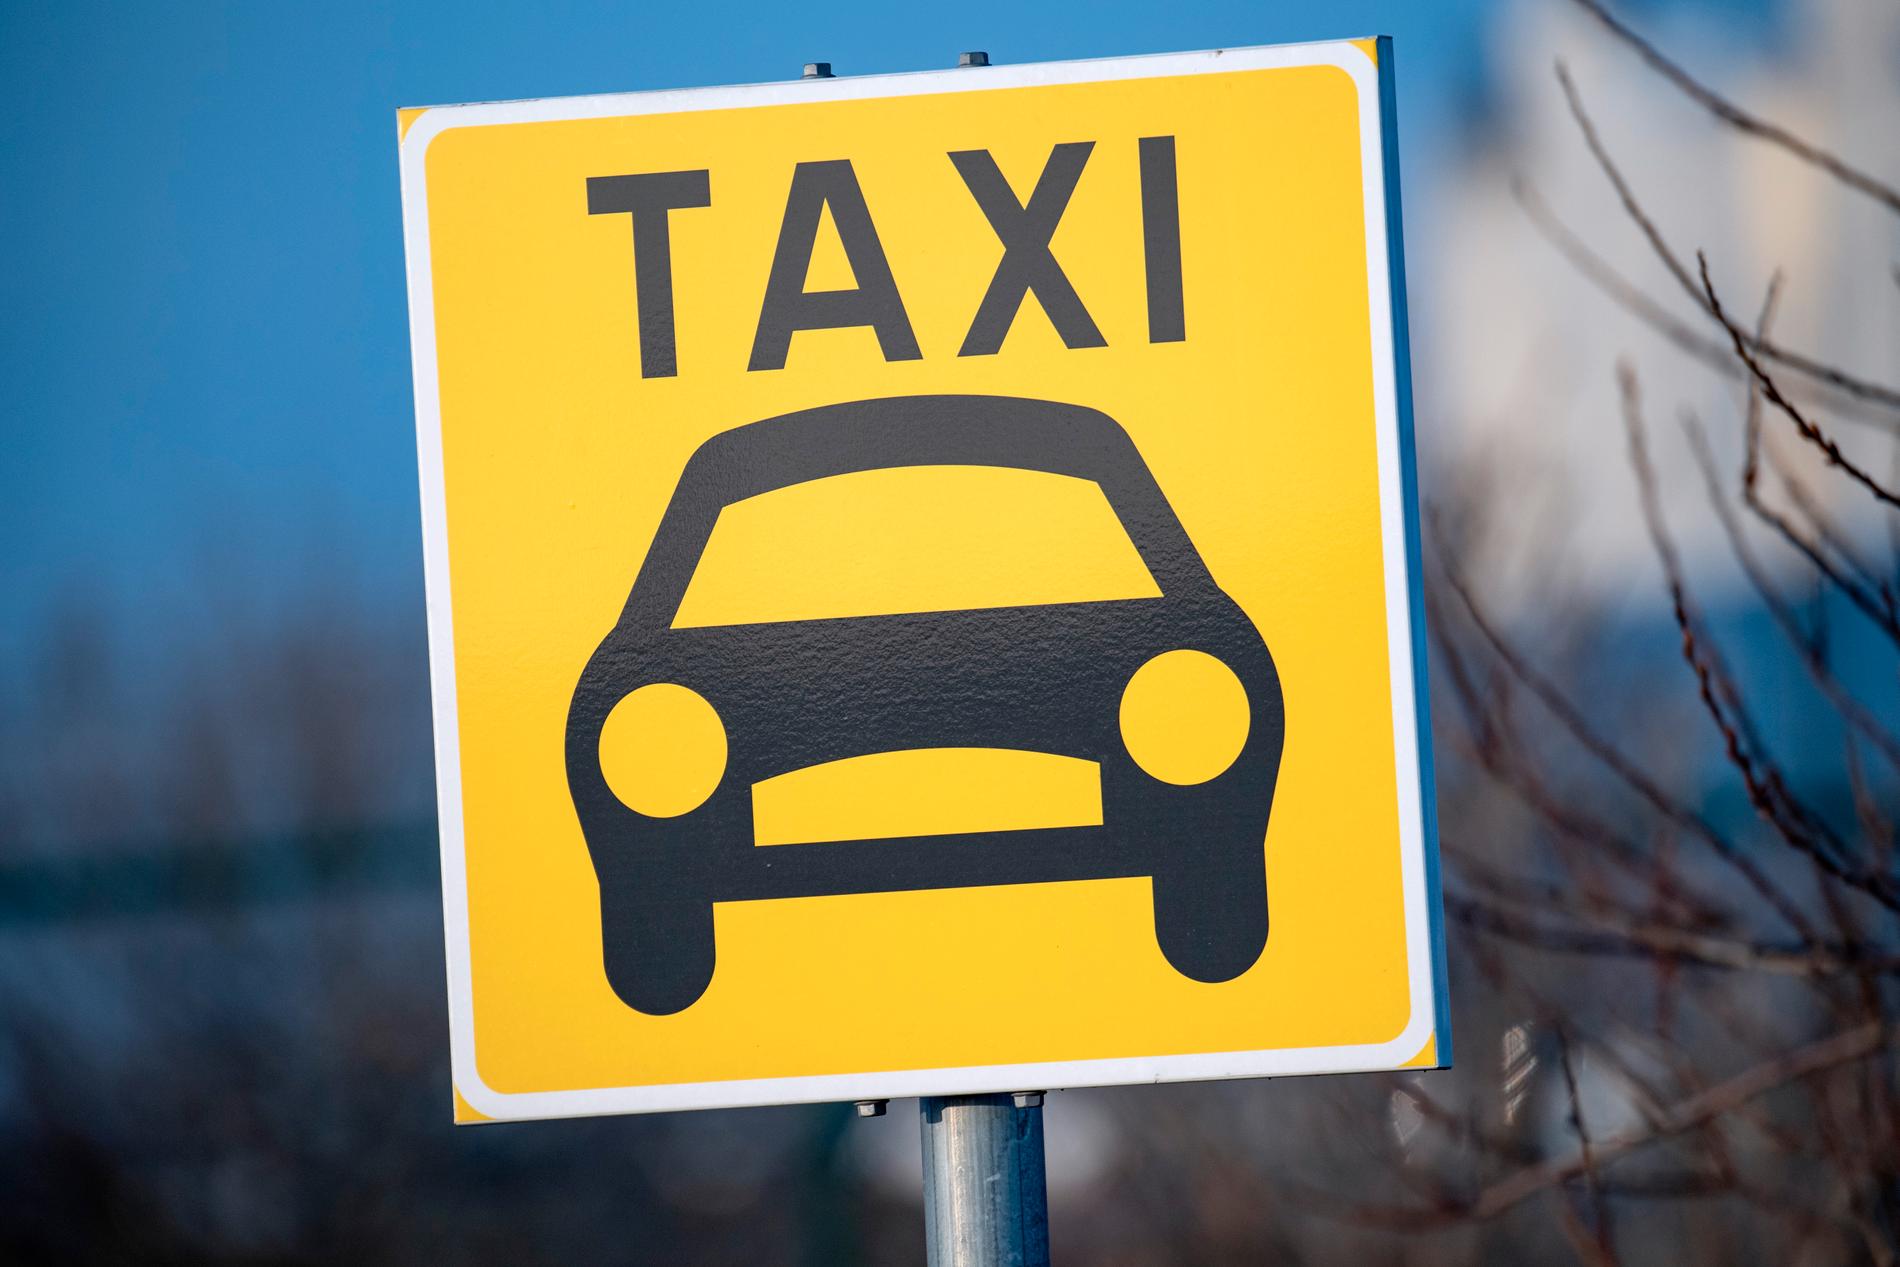 Taxi i Stockholm och Göteborg körde för fort på 80-väg i nio fall av tio i en granskning som gjorts av Statens väg- och transportforskningsinstitut (VTI) i samarbete med flera myndigheter. Arkivbild.